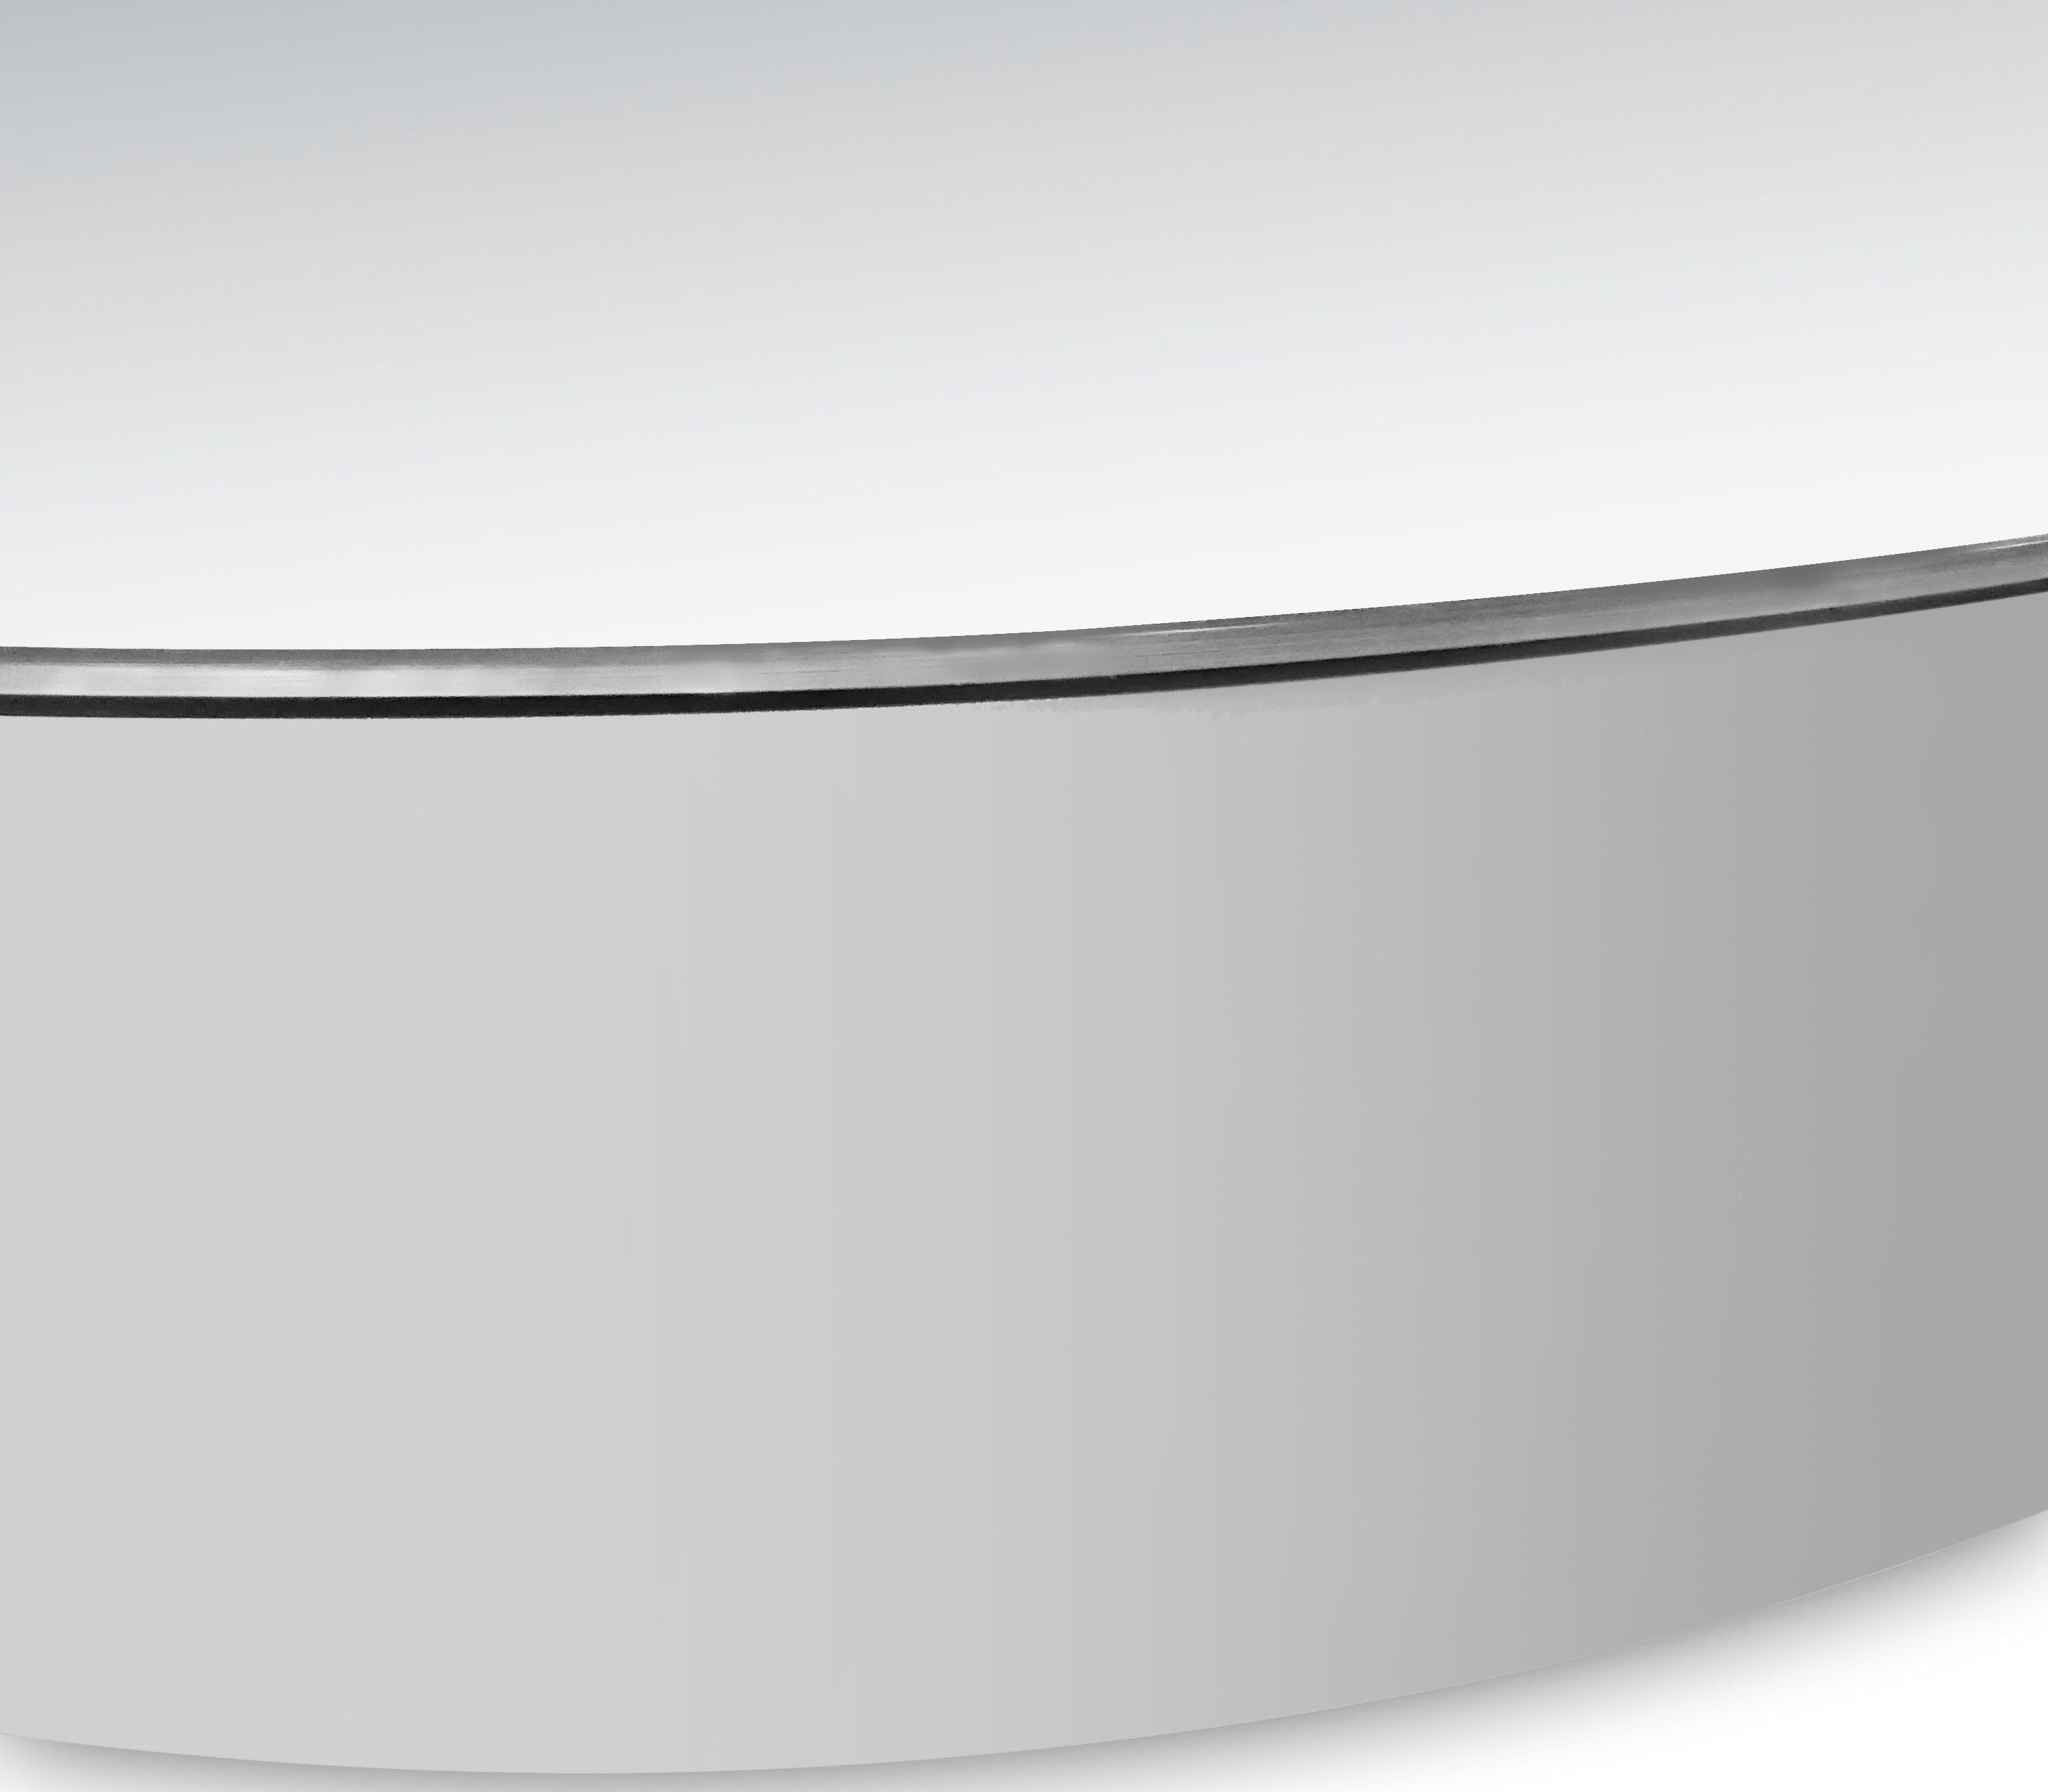 aus Ø: Badezimmerspiegelschrank und Talos 60 Echtglas, cm, Aluminium IP24